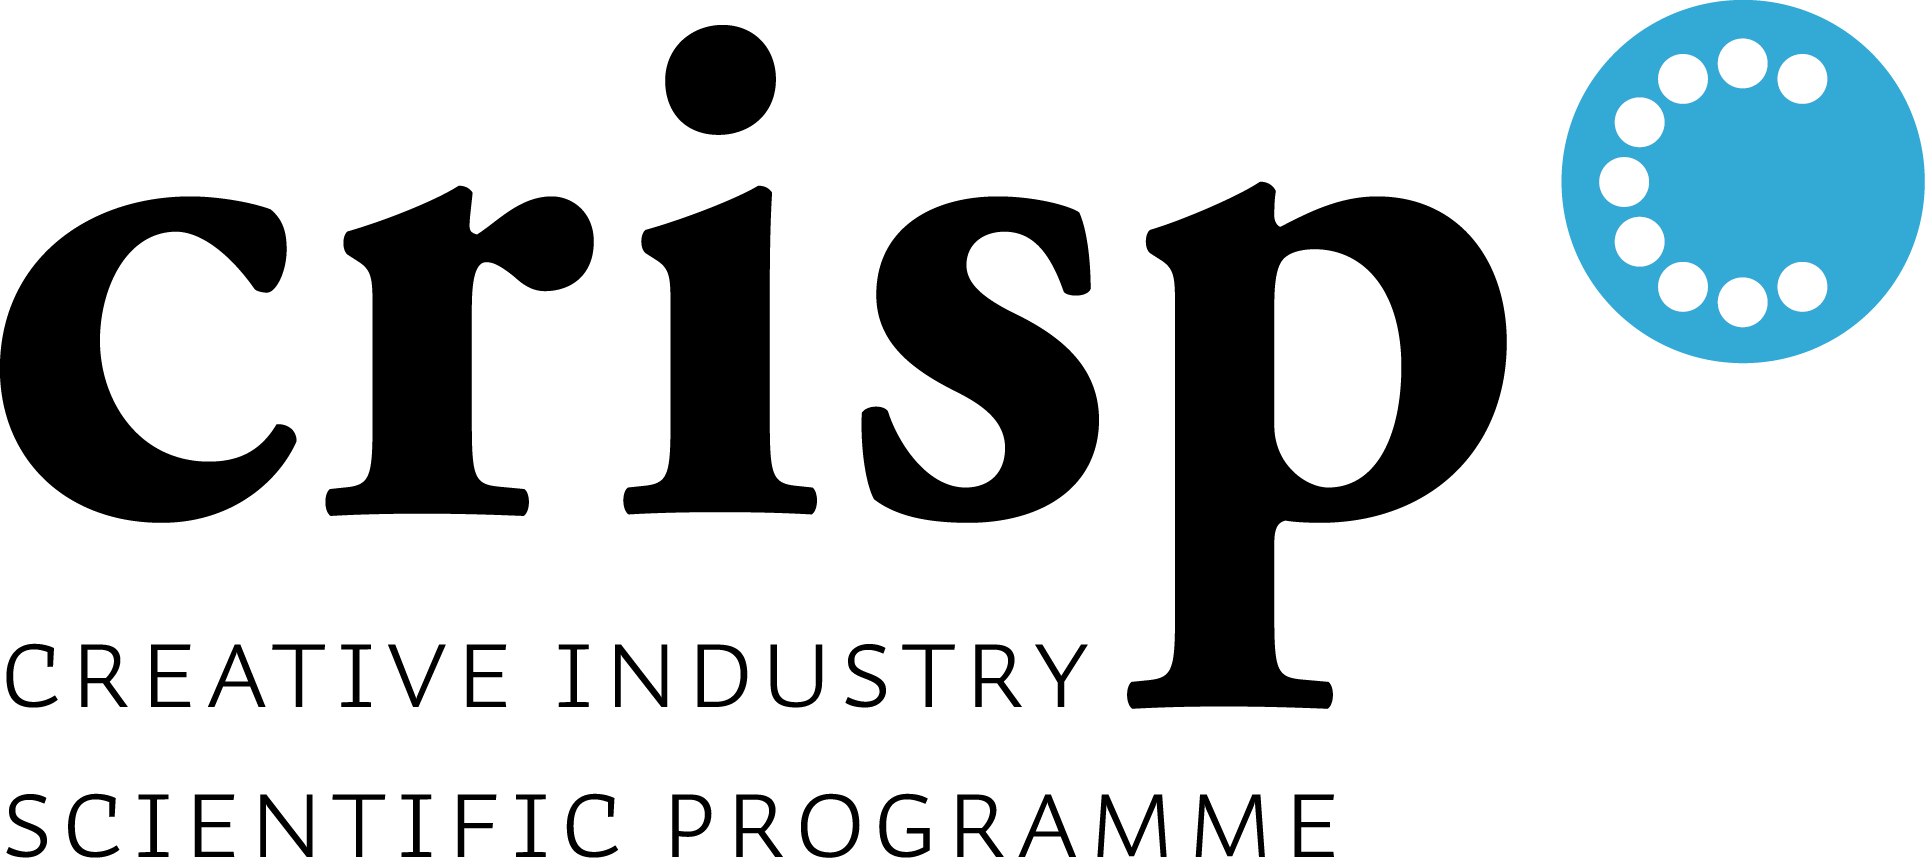 CRISP_logo